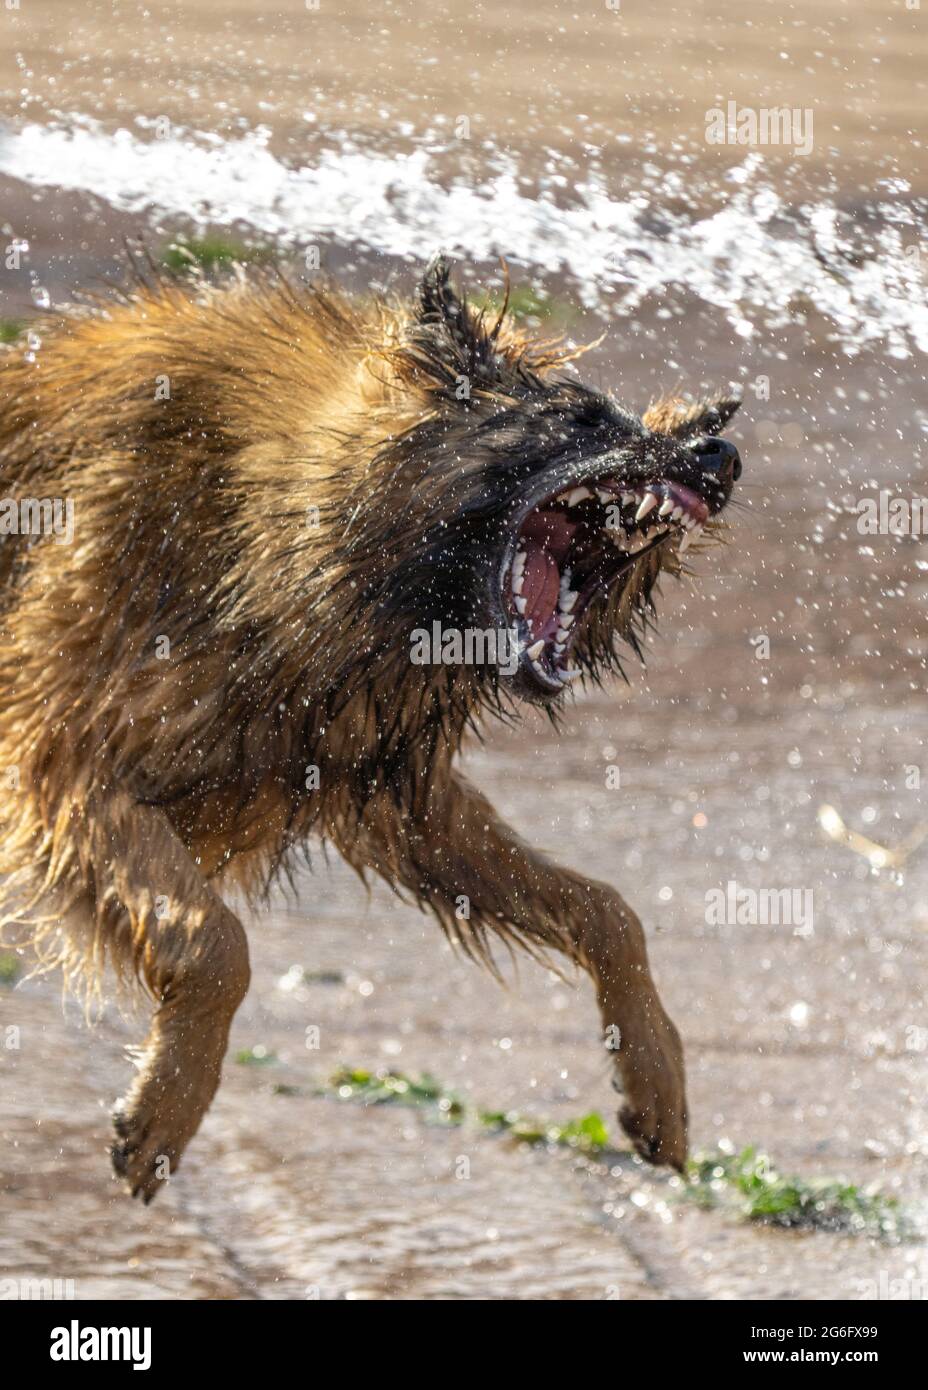 Elsässischer Welpe Hund Deutscher Schäferhund suchen wild tragende Zähne versuchen, Wasser aus Schlauch-Rohr angreifen. Scharfe Eckzähne aus der Nähe des Wachhundes Stockfoto